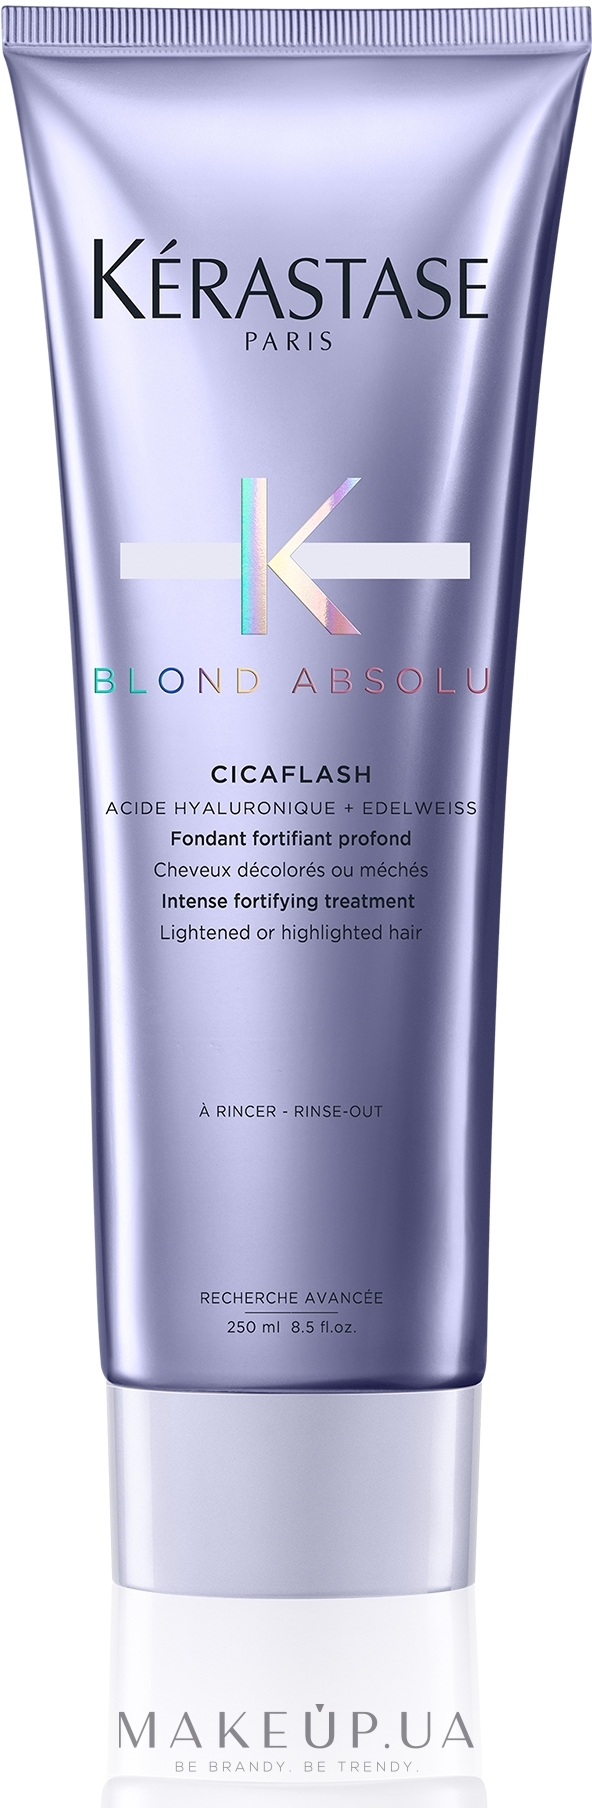 Фондан для увлажнения и восстановления волос - Kerastase Blond Absolu Cicaflash Conditioner — фото 250ml